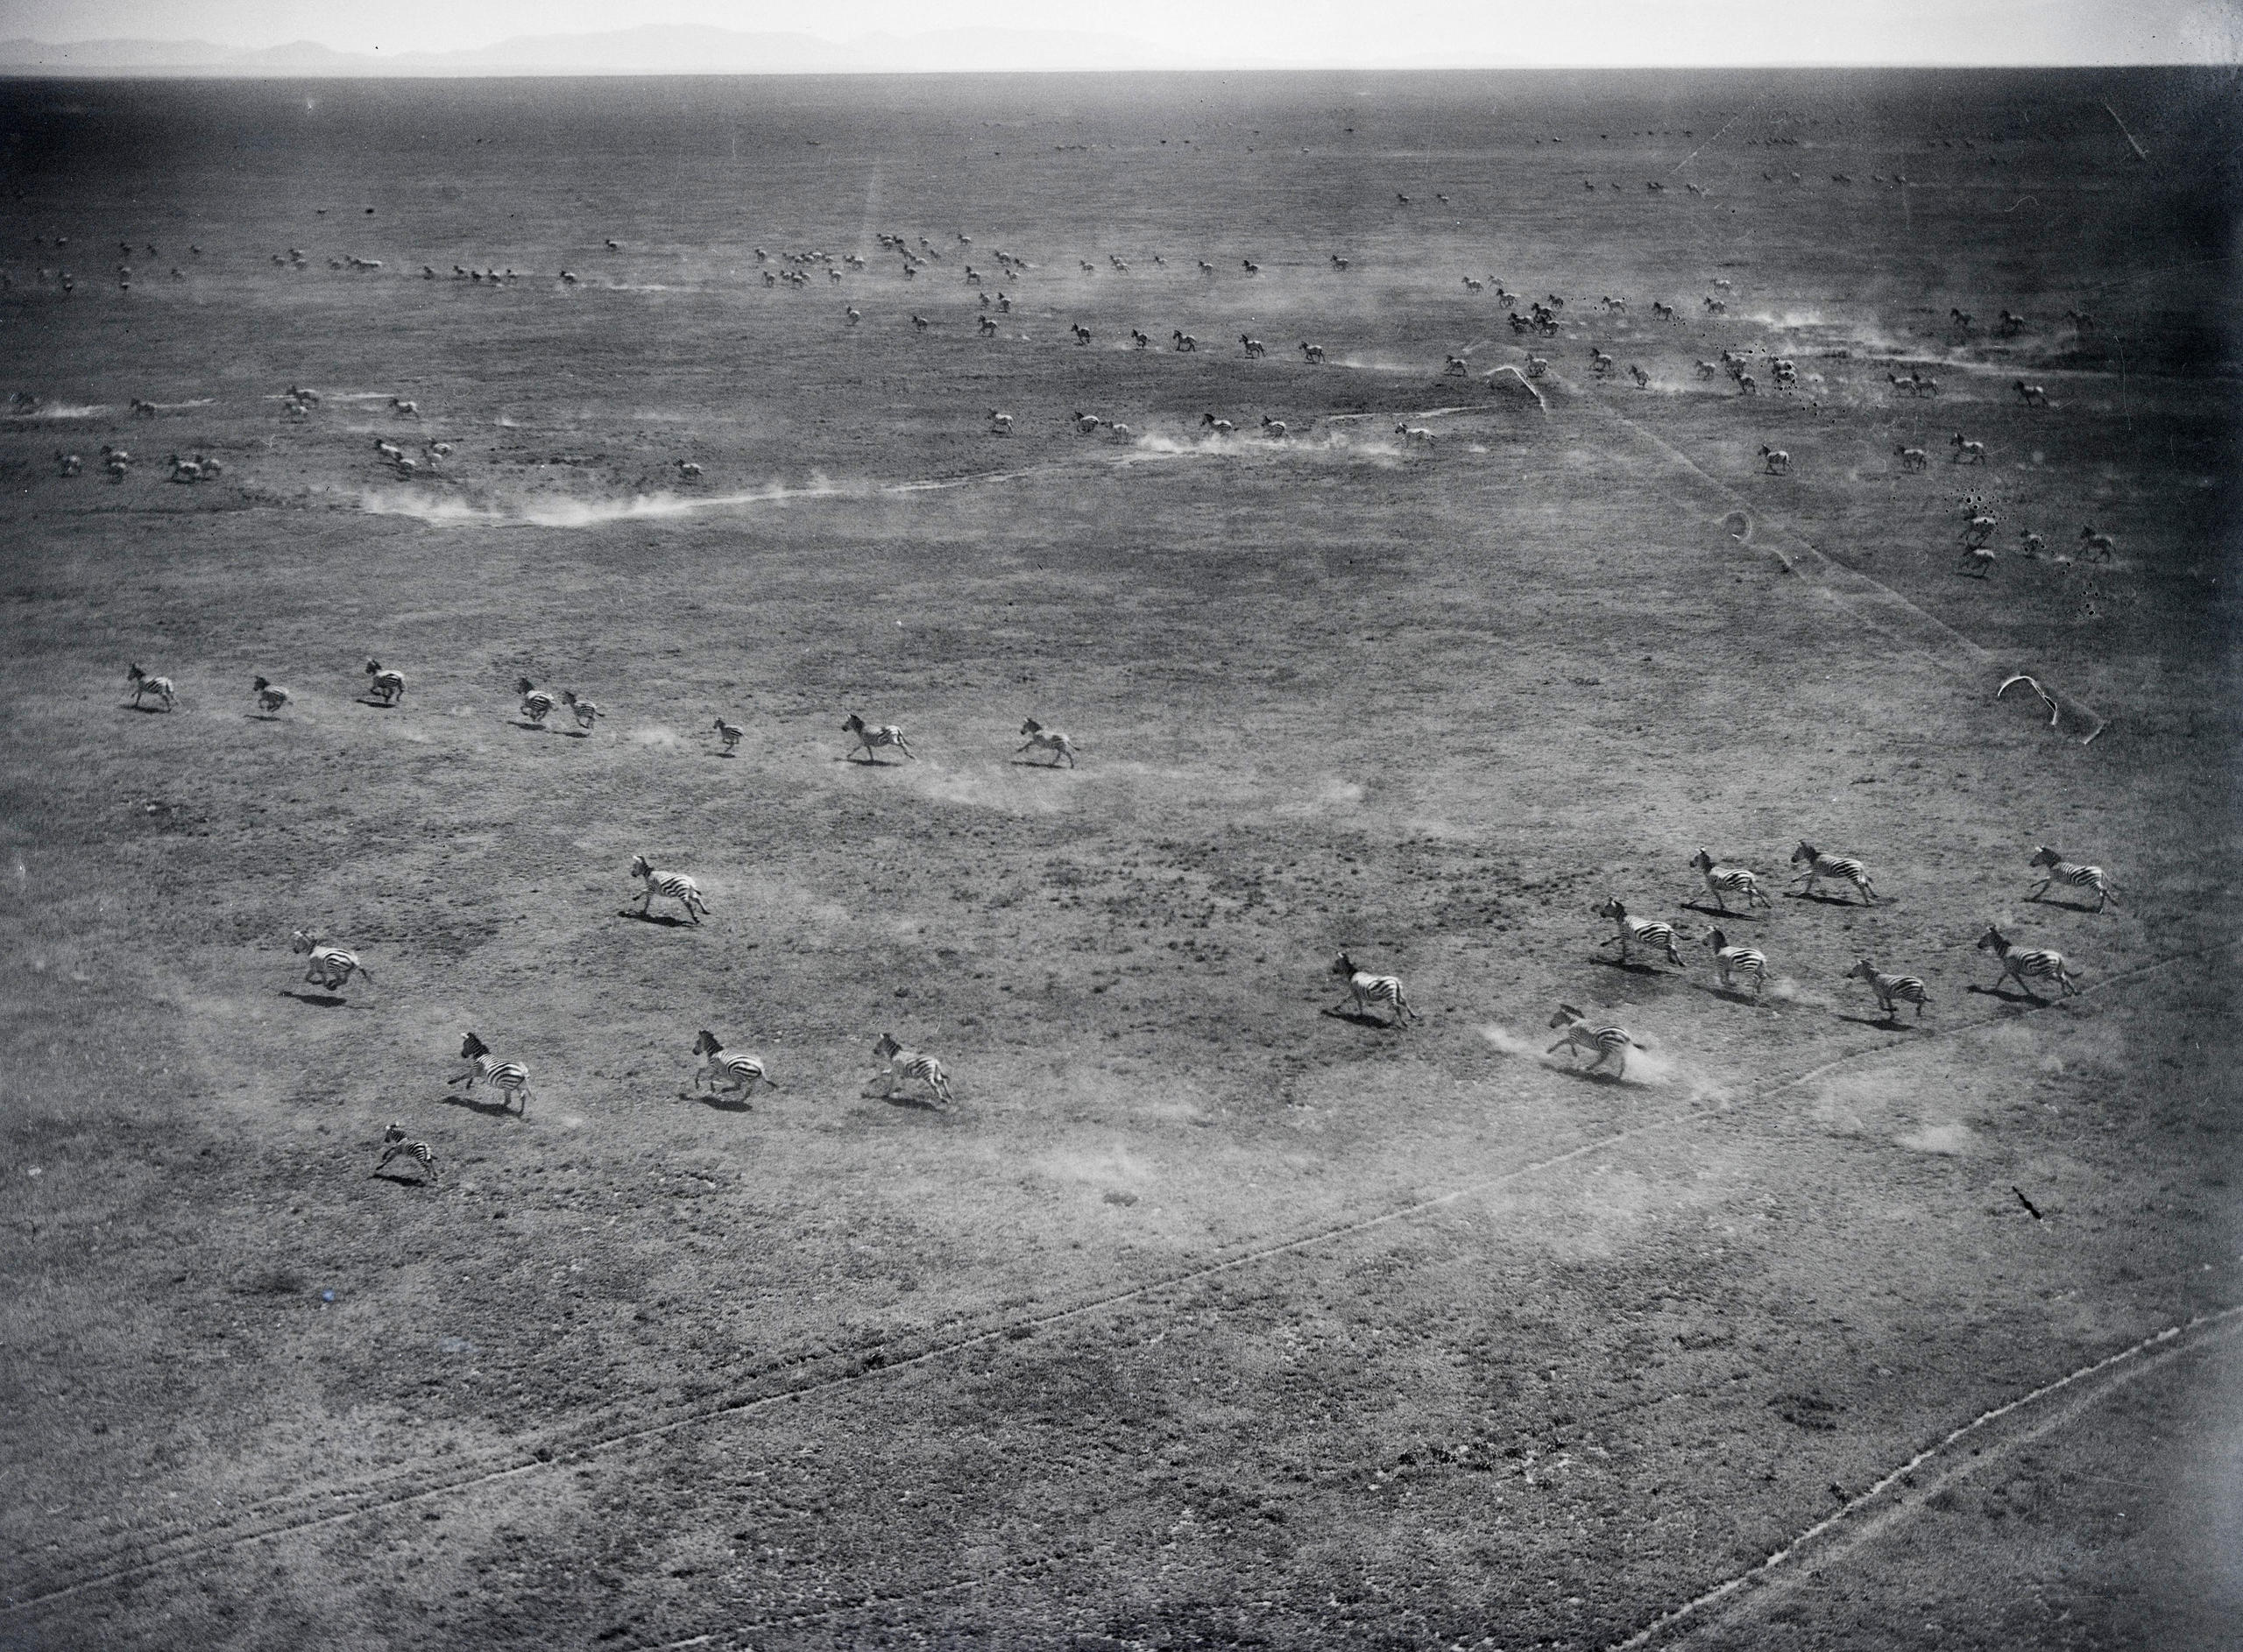 Les plaines du Serengeti au Kenya, 1930